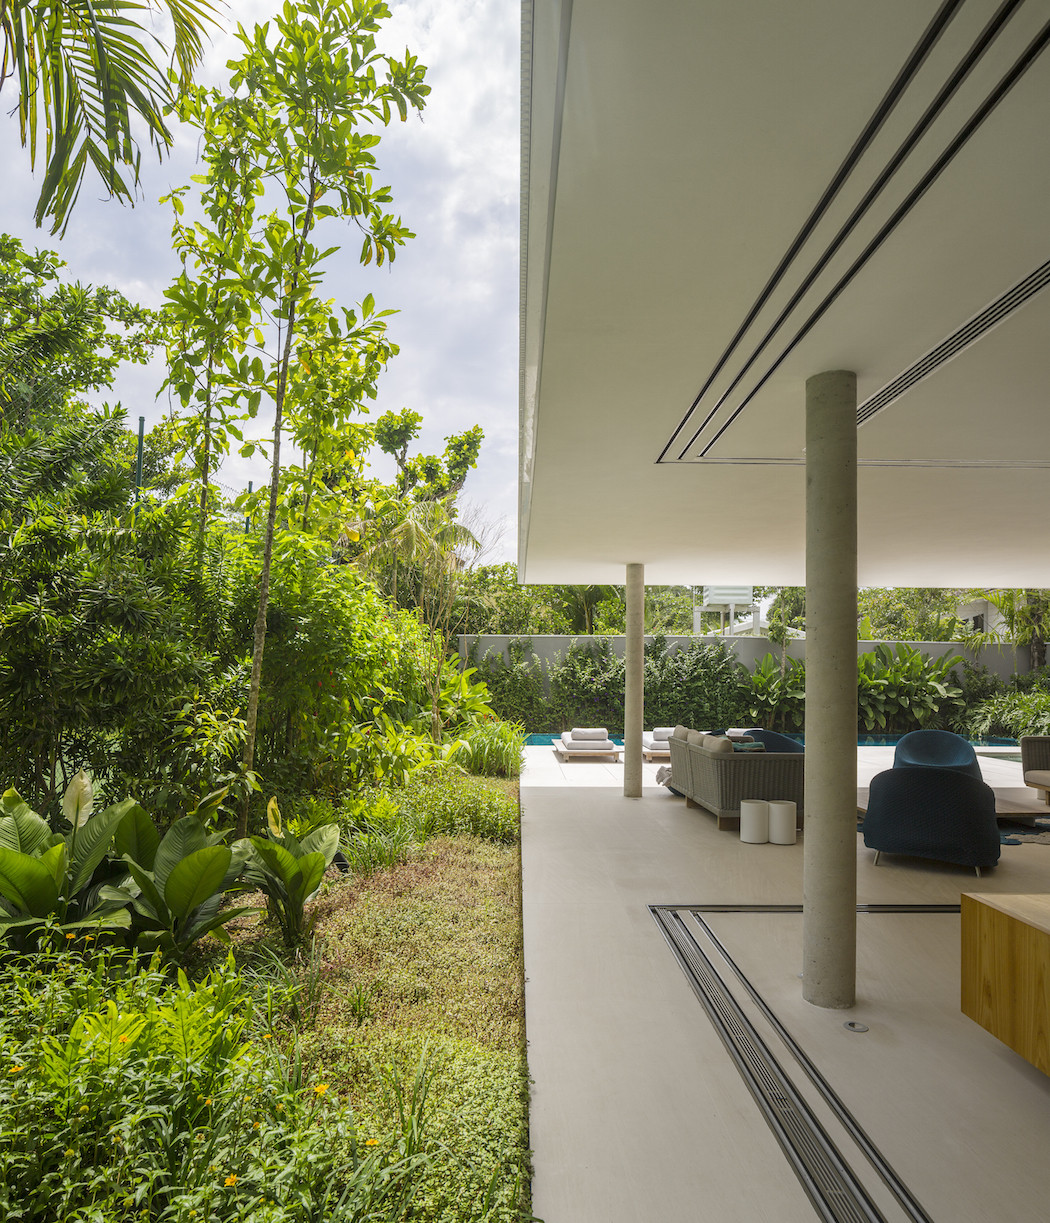 Minimalist concrete casa branca in the tropics  3